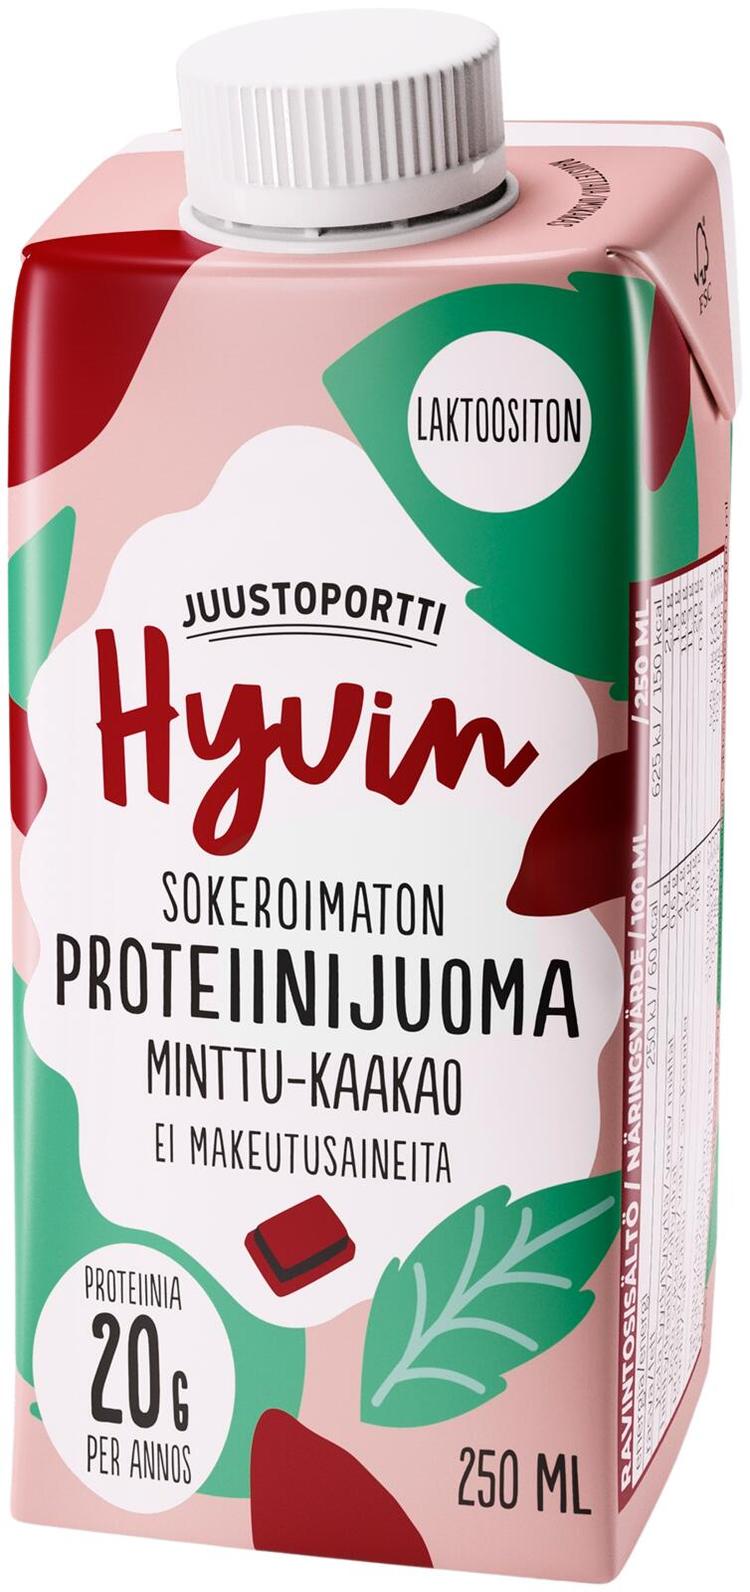 Juustoportti Hyvin sokeroimaton ja makeutusaineeton mintun ja kaakaon makuinen proteiinijuoma 250 ml UHT laktoositon